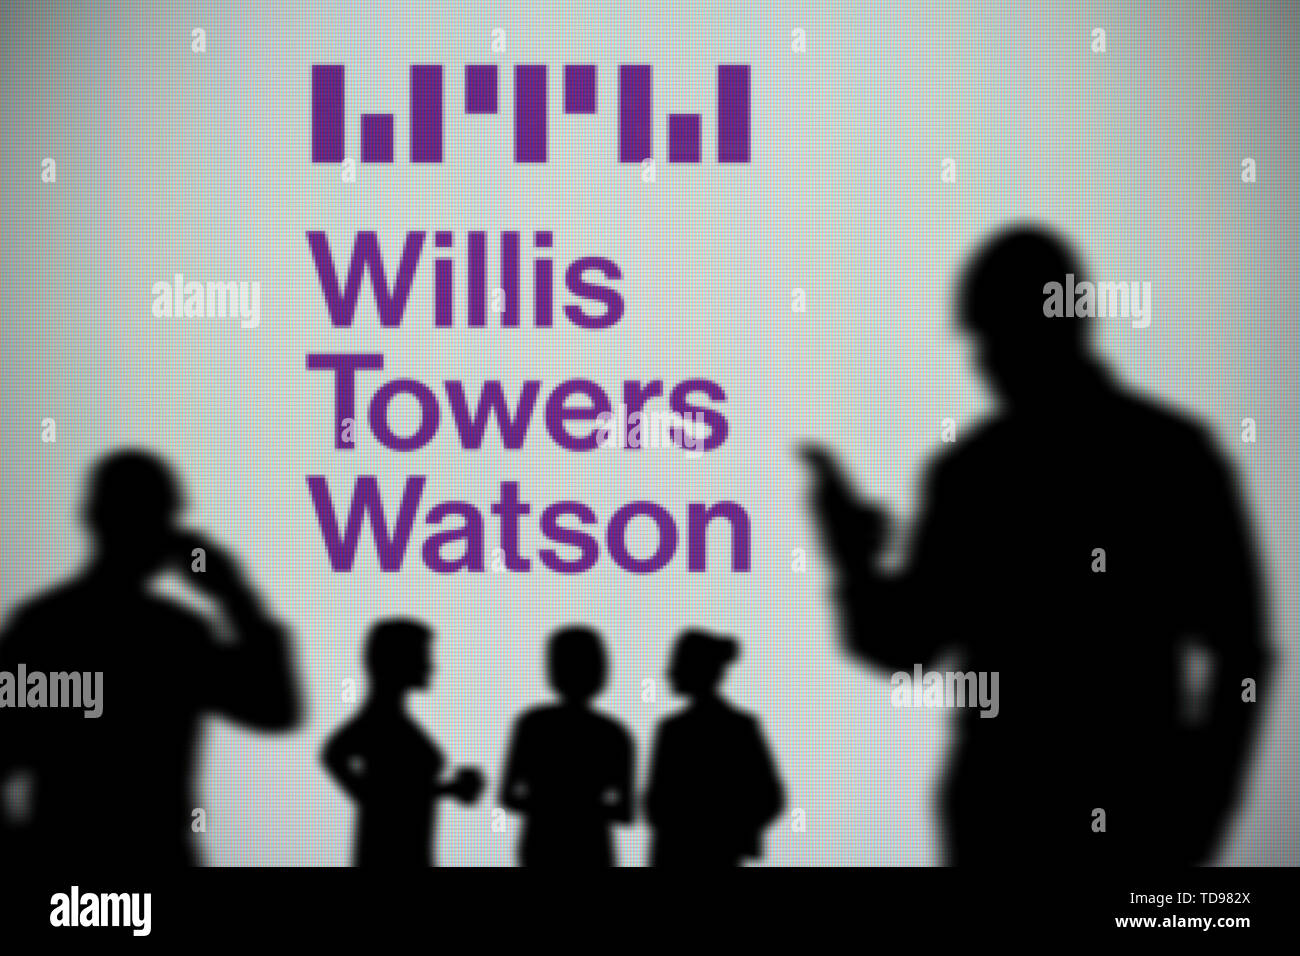 Il Willis Towers Watson logo è visibile su uno schermo a LED in background mentre si profila una persona utilizza uno smartphone (solo uso editoriale) Foto Stock